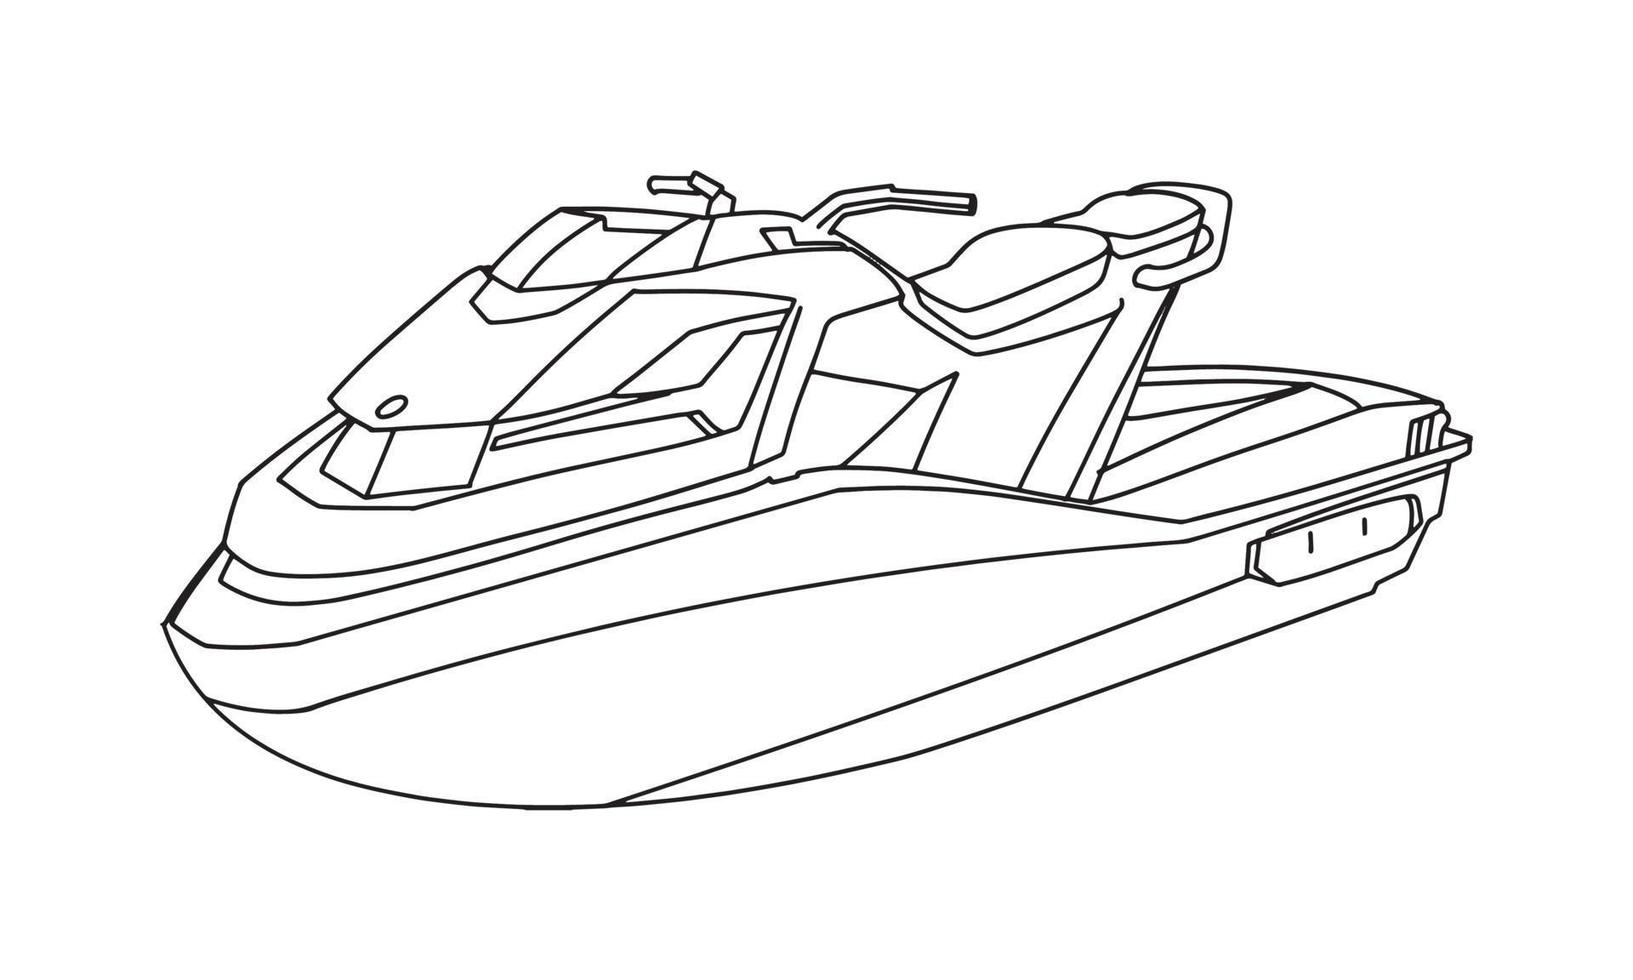 hastighet båt skiss linjekonst illustration vektor